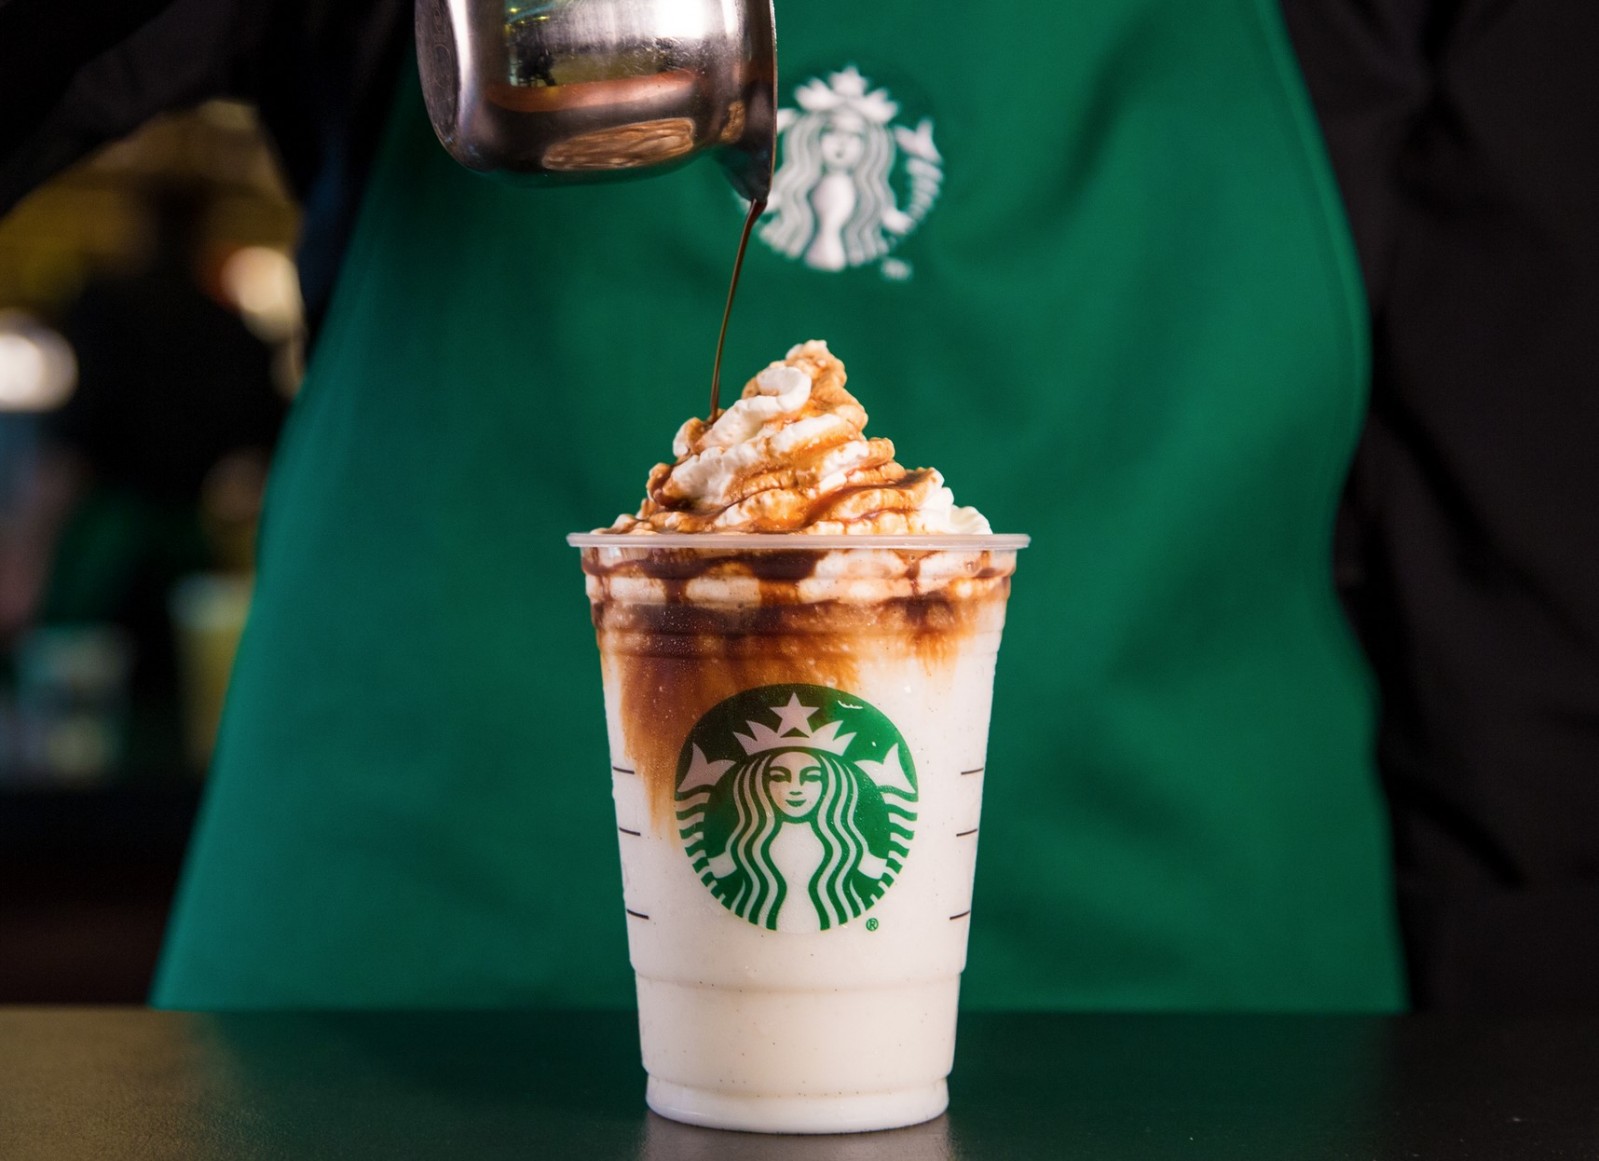 Chính sách refill của Starbucks còn trở thành một chiến lược xây dựng thương hiệu cực kỳ hiệu quả